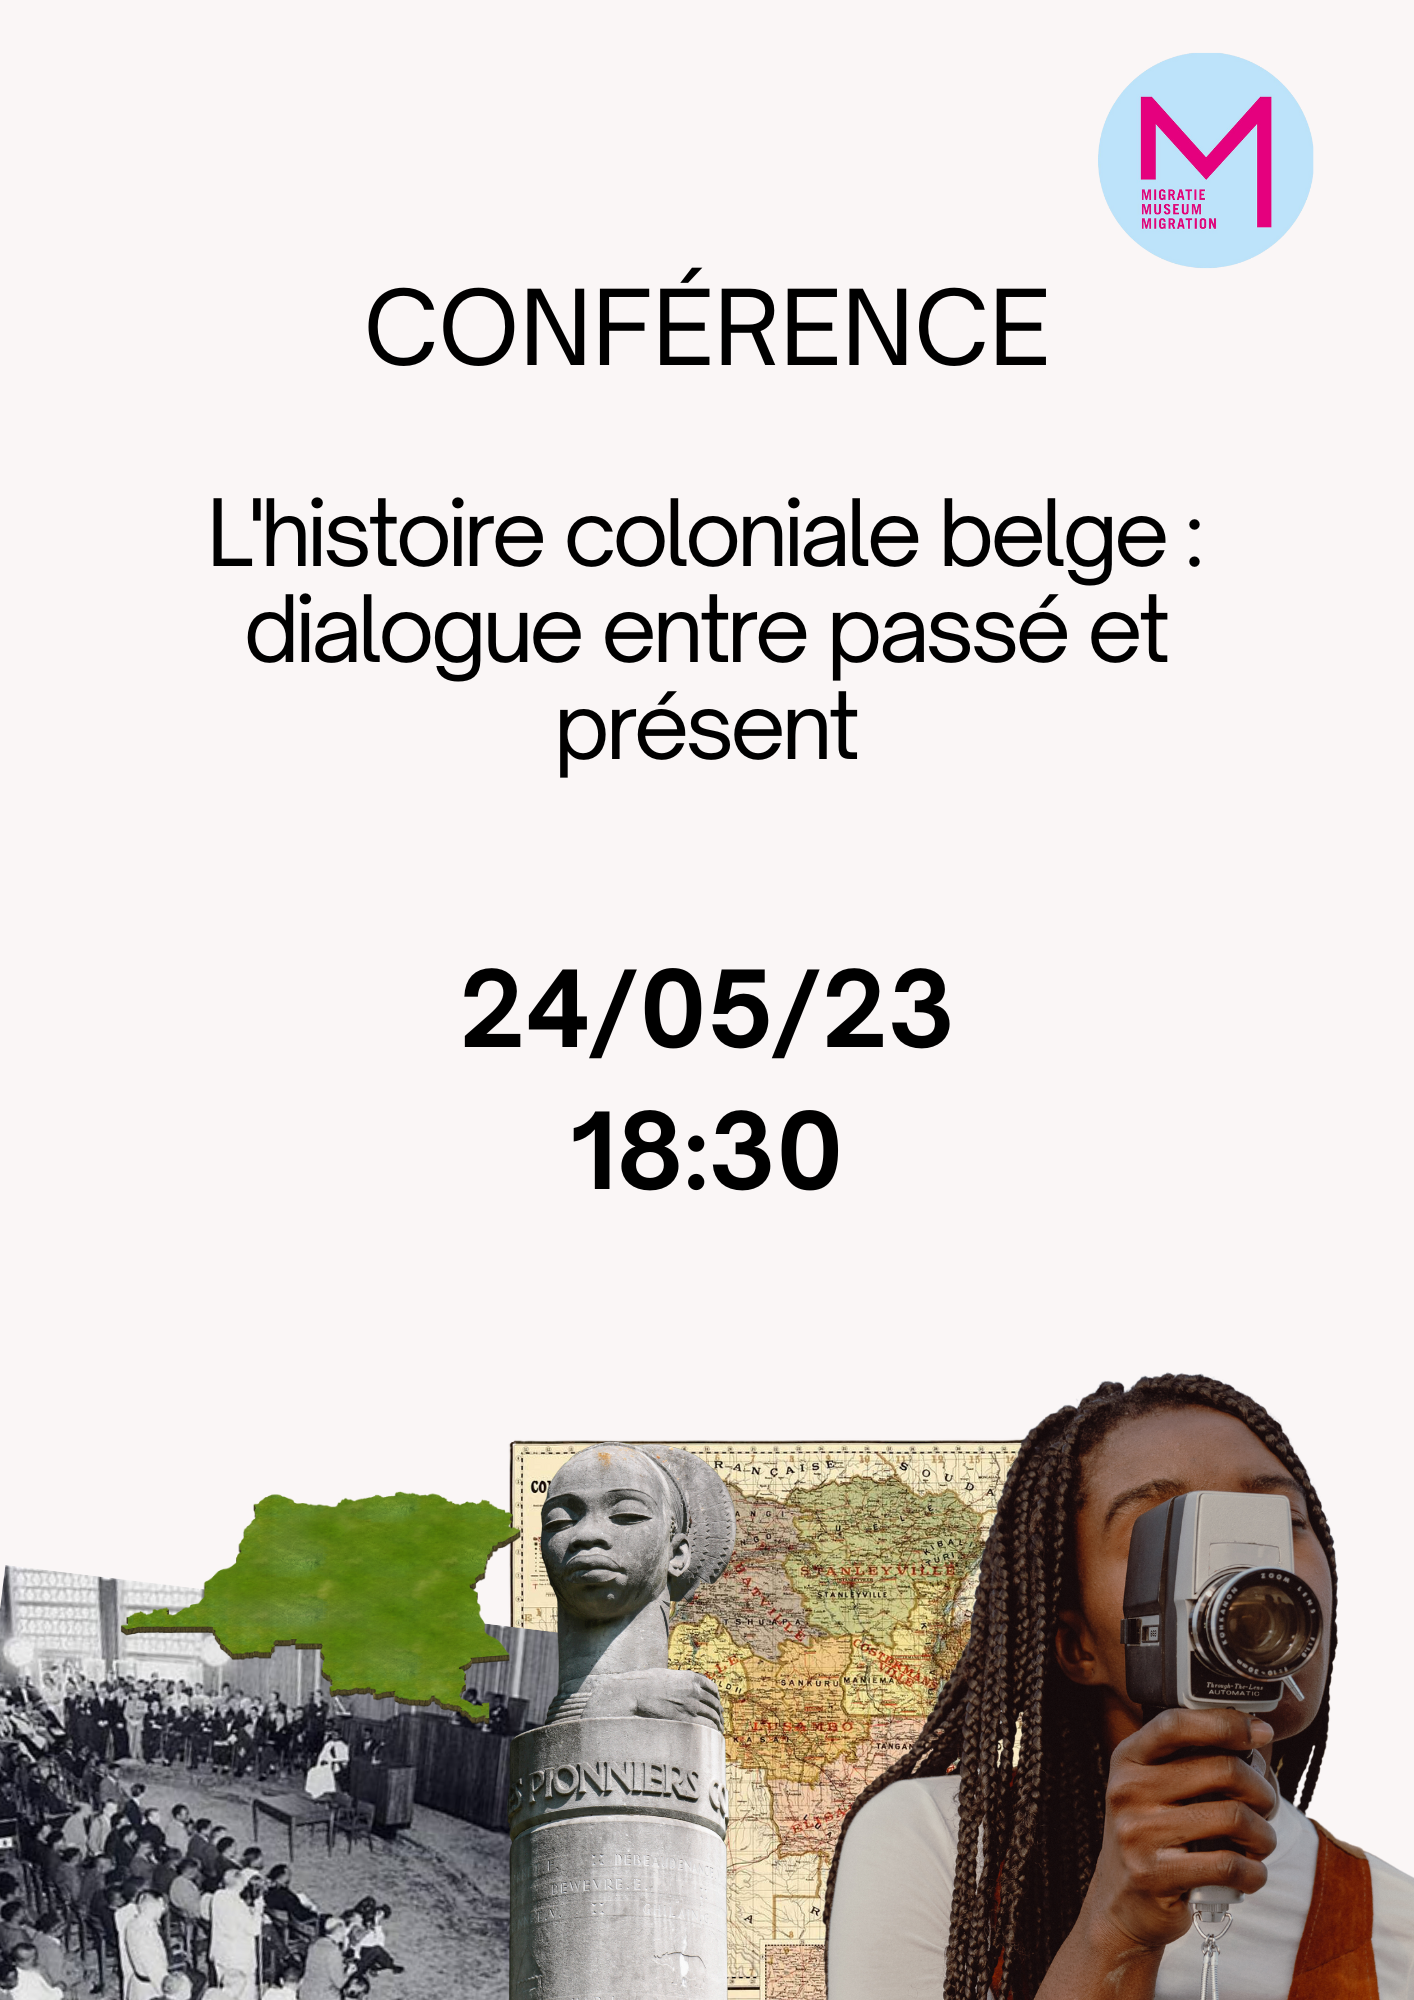 L'histoire coloniale dialogue entre passé et présent Conférence (Publication Instagram (Carré)) (1080 × 1920 px) (210 × 297 mm) (1)